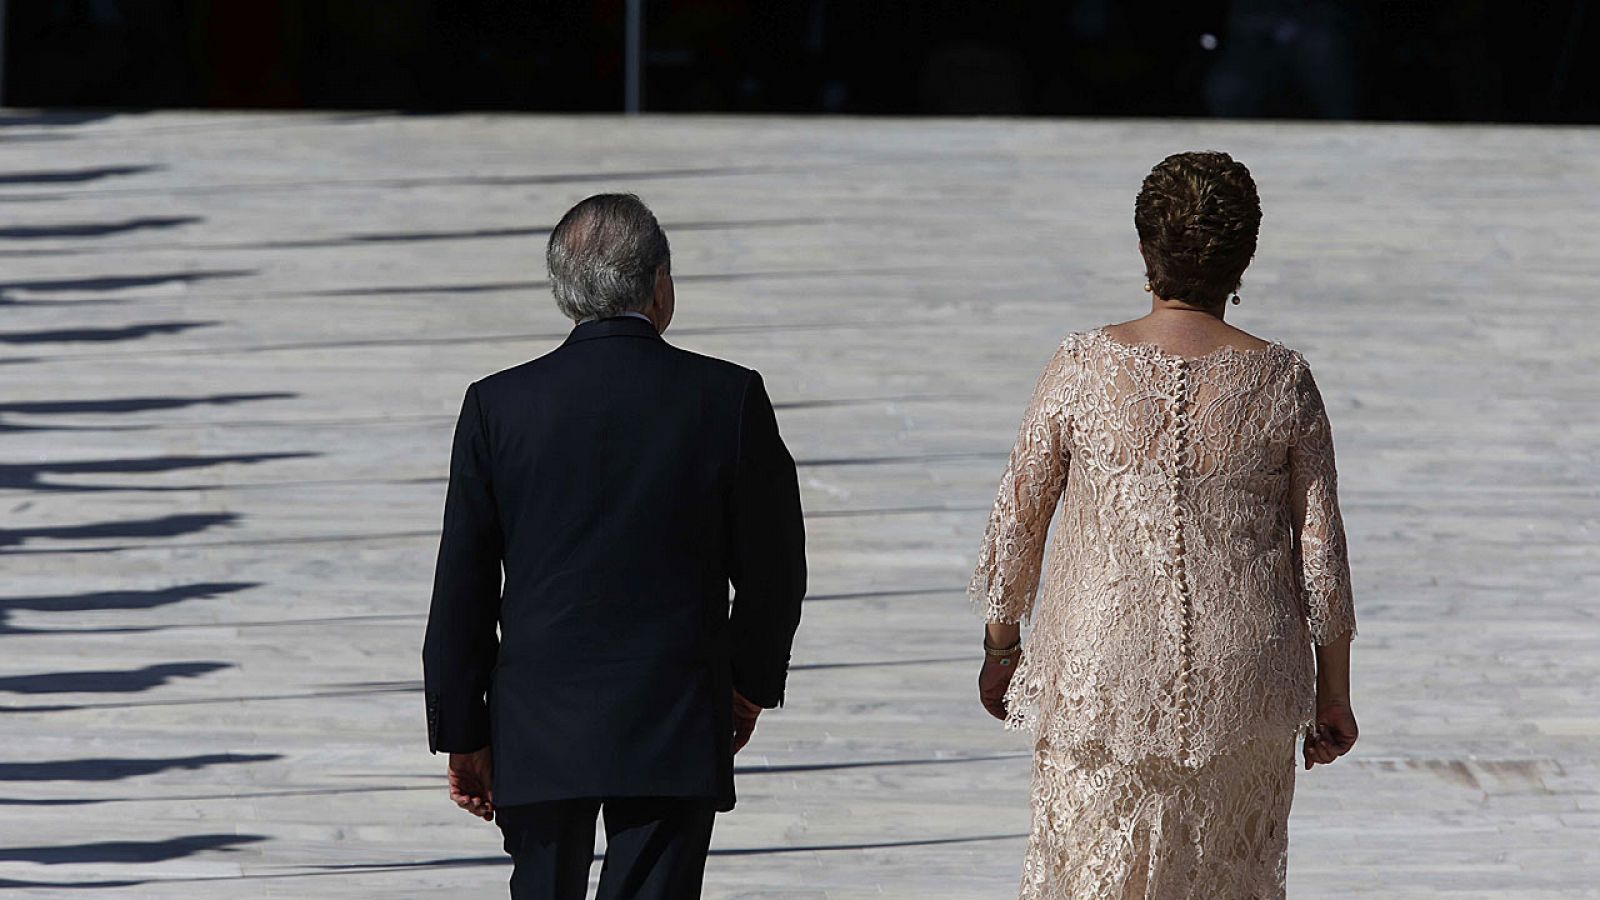 La presidenta brasileña, Dilma Rousseff, en el limbo, tras ser apartada temporalmente del poder.